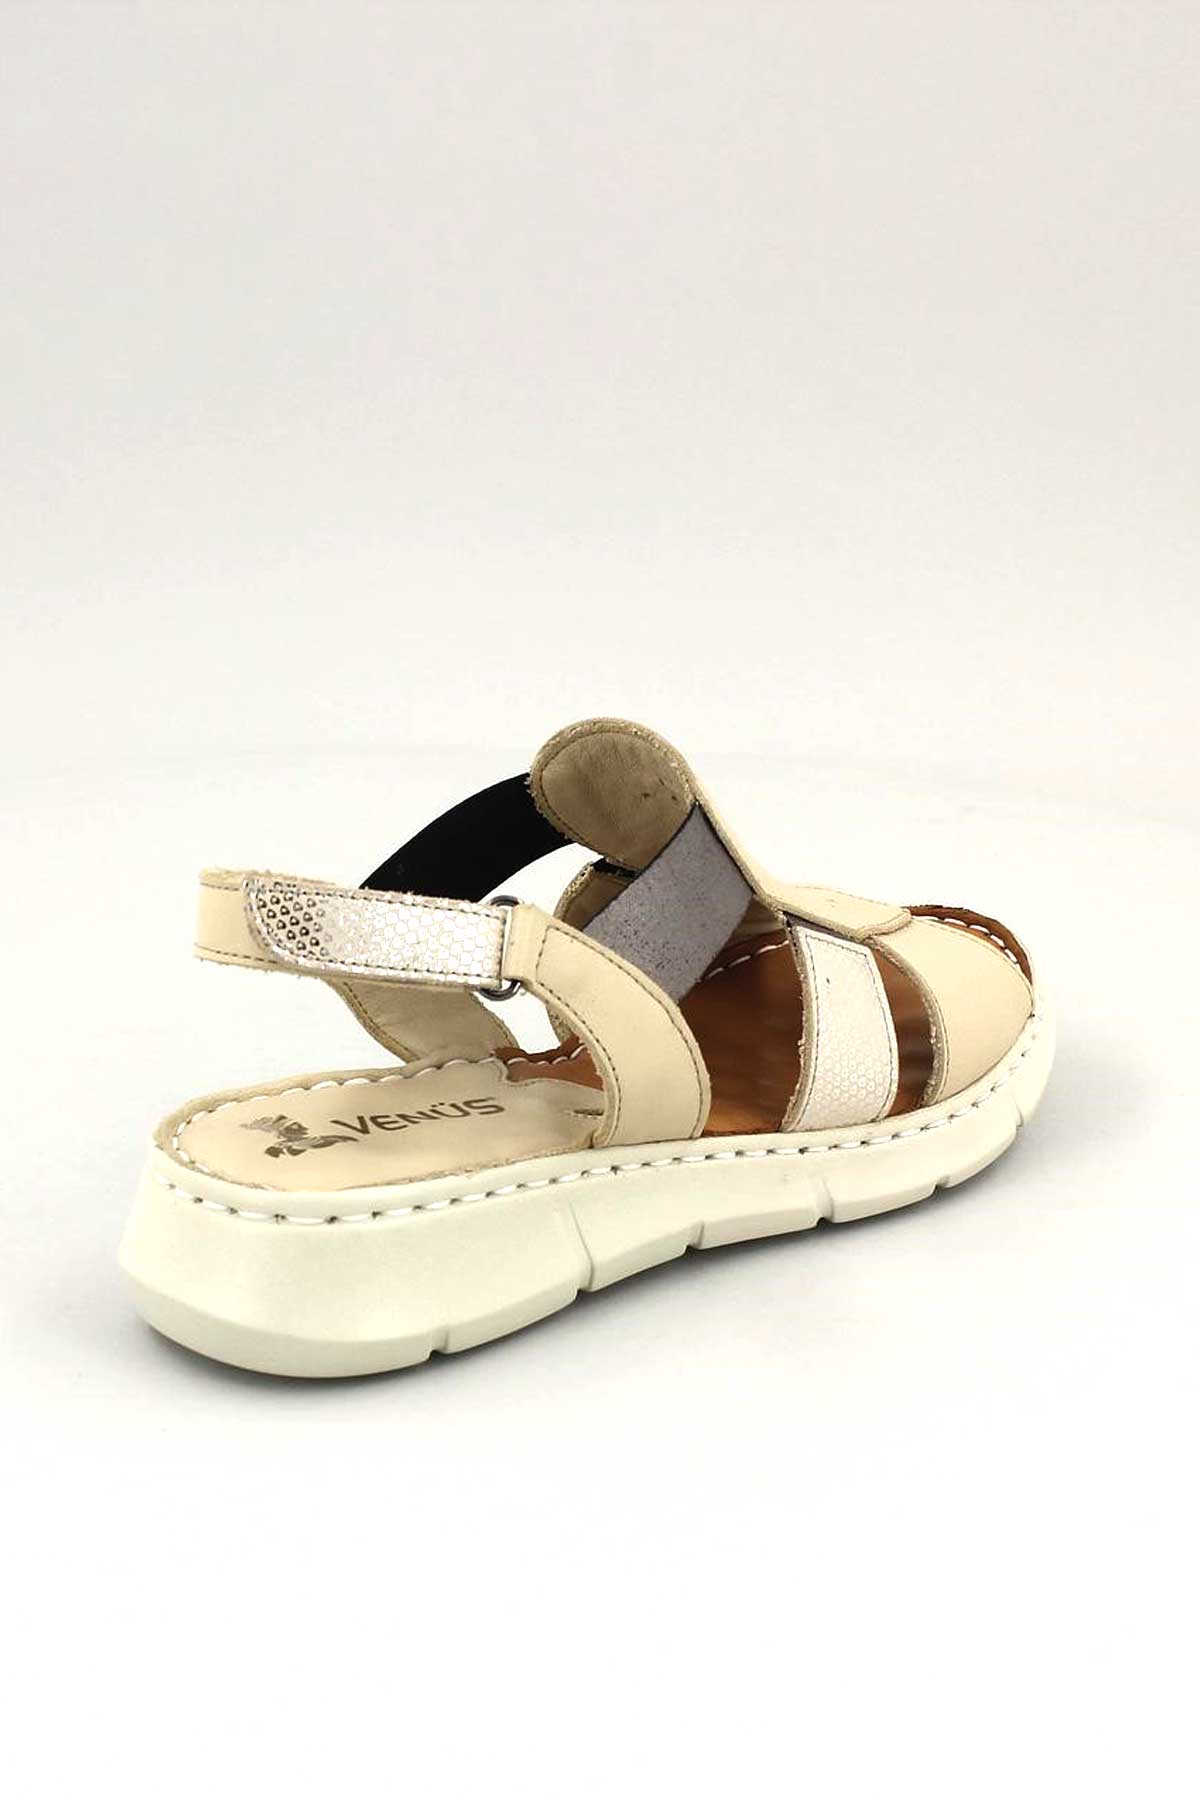 Kadın Comfort Deri Sandalet Bej 2094108Y - Thumbnail